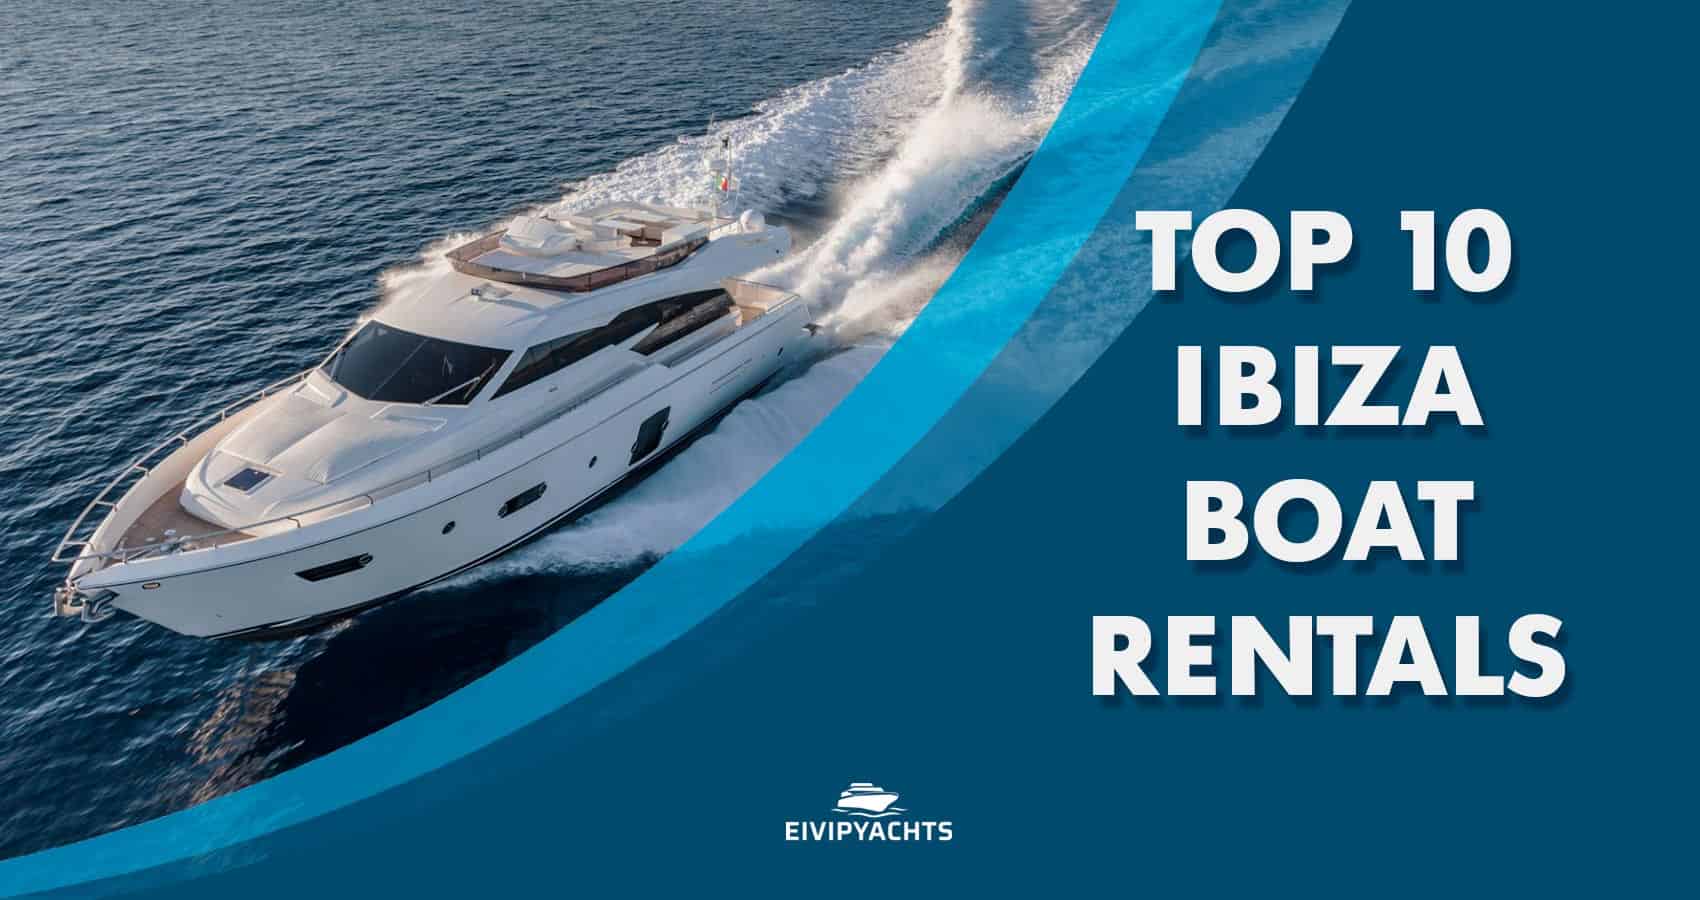 Top 10 Ibiza Boat Rentals